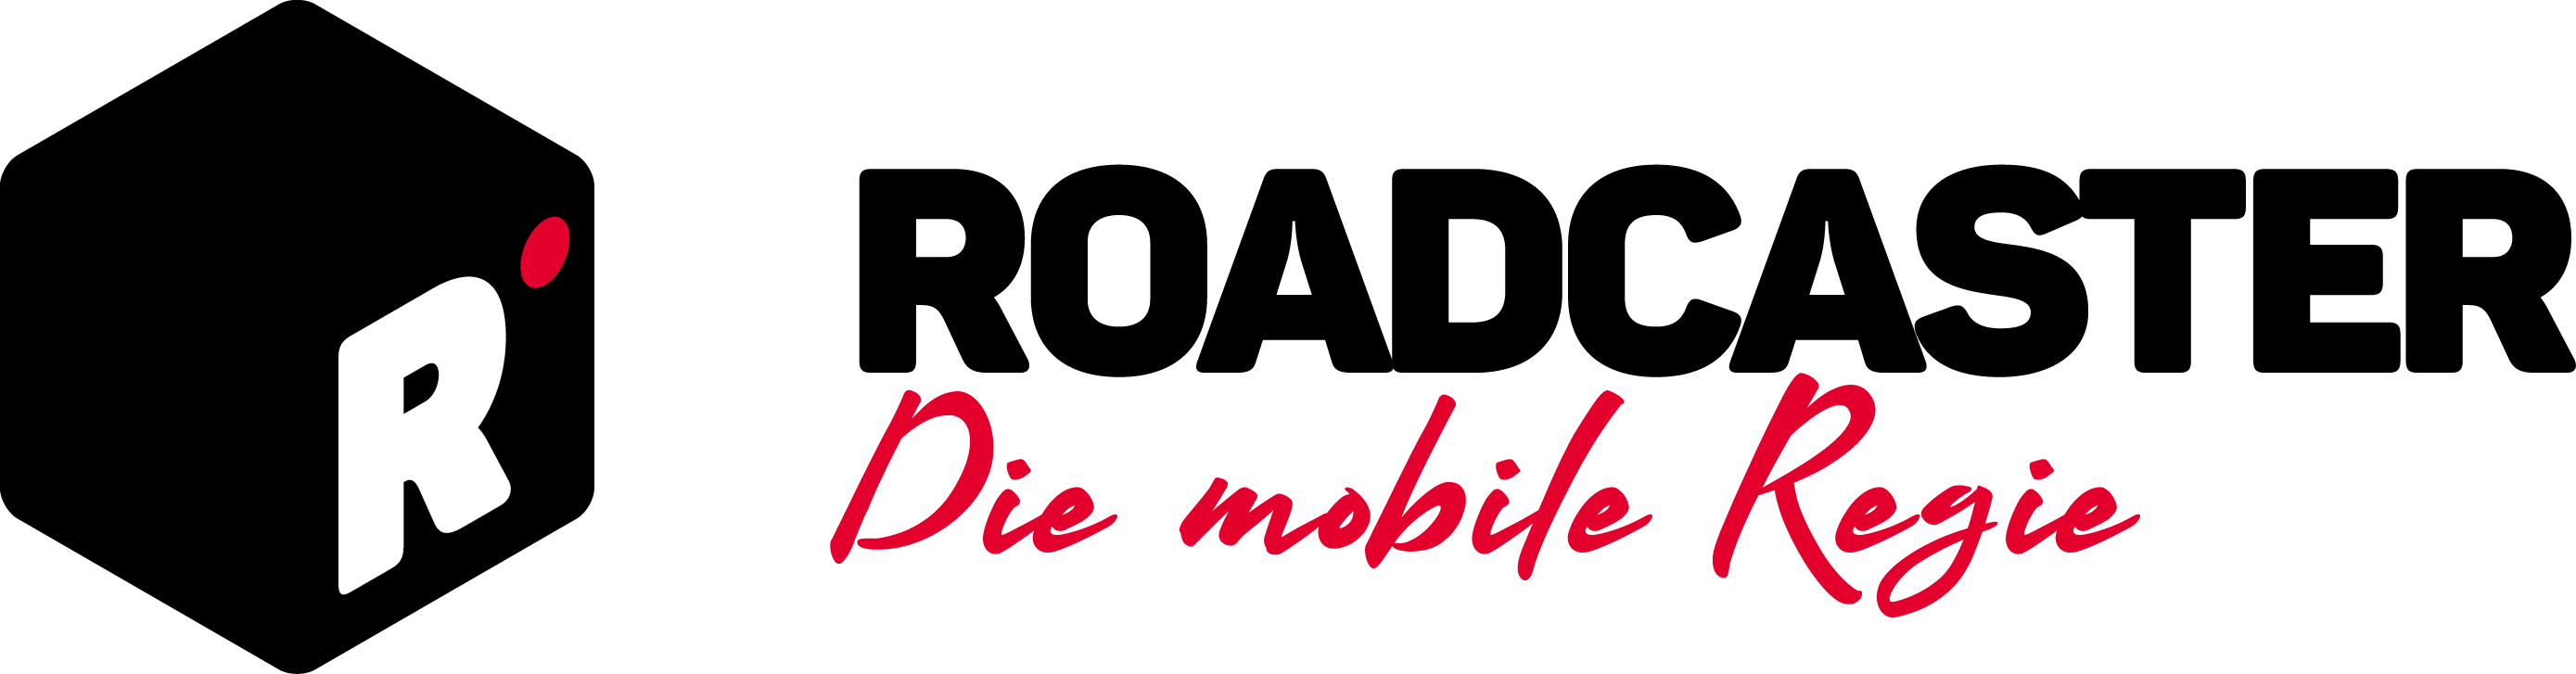 Roadcaster – Die mobile Regie Logo